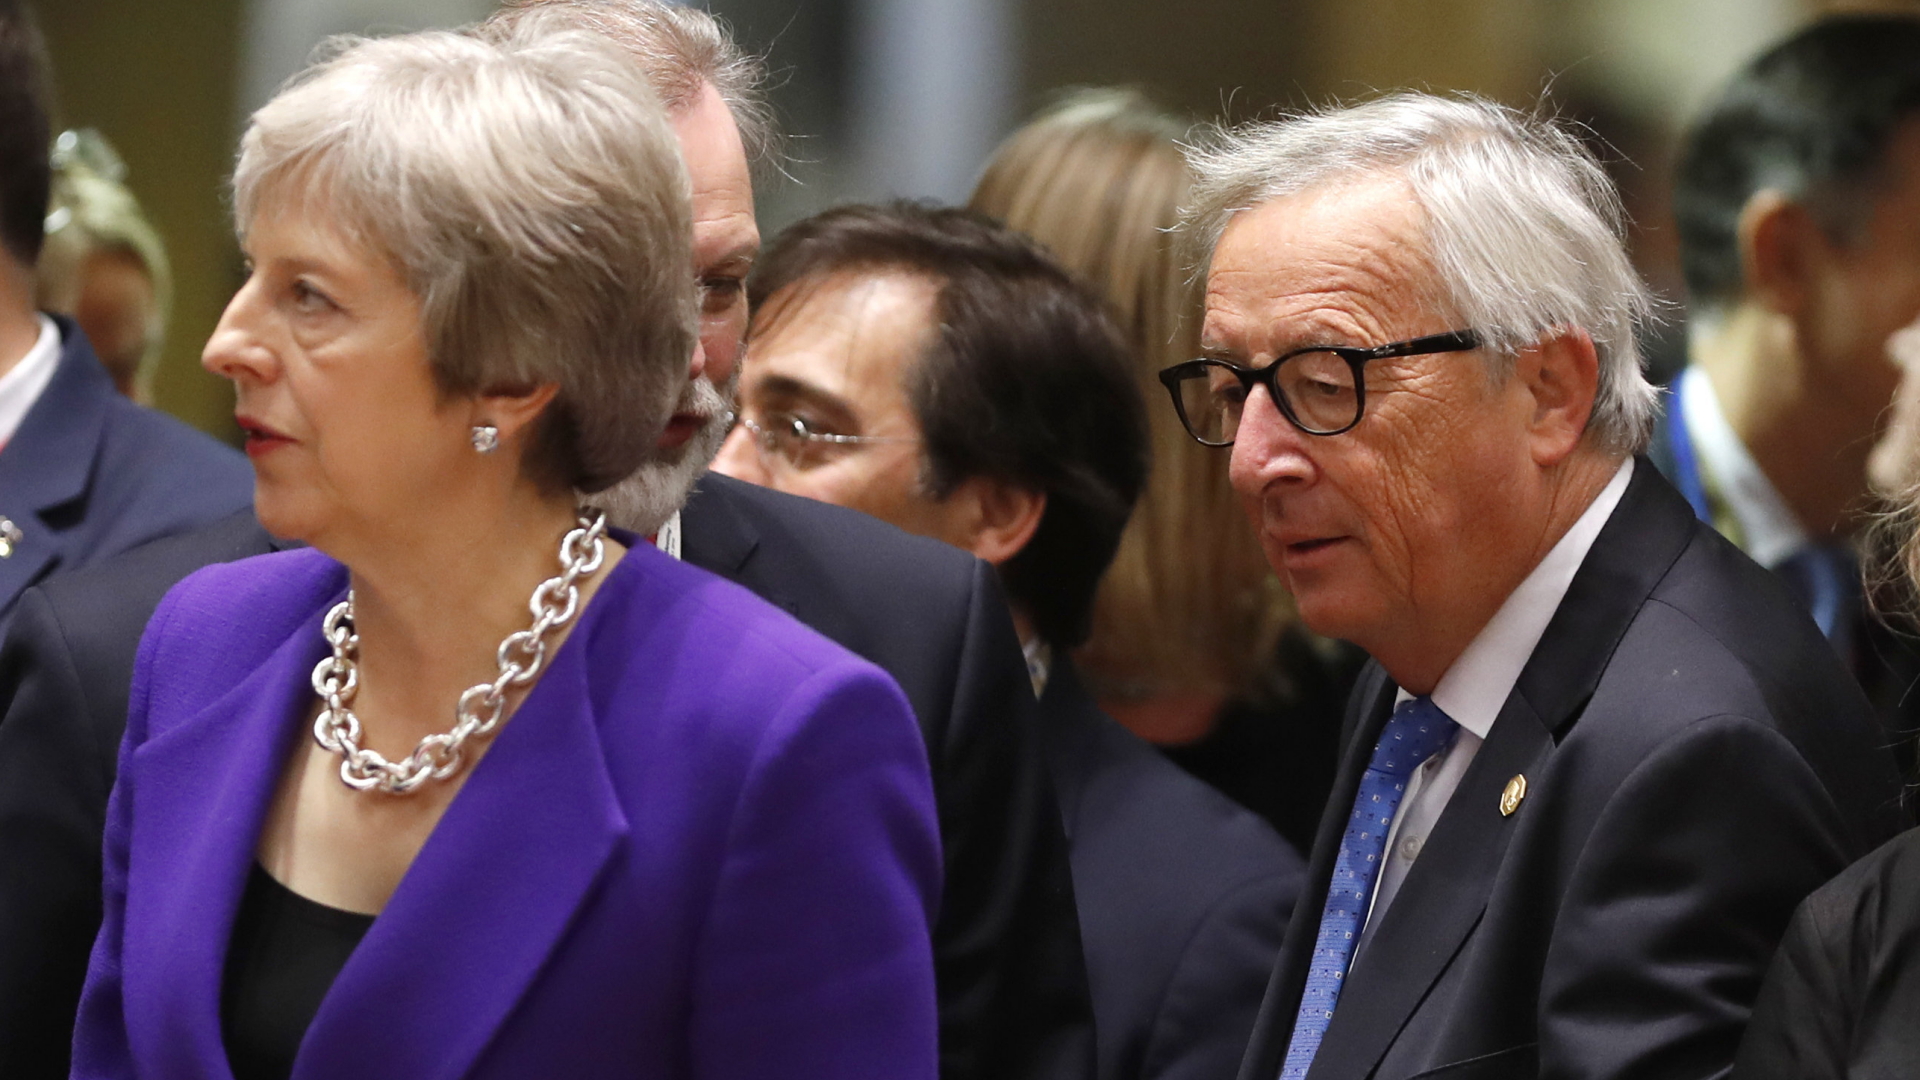 Die britische Premierministerin Theresa May und EU-Kommissionschef Jean-Claude Juncker in einer Menschenmenge.